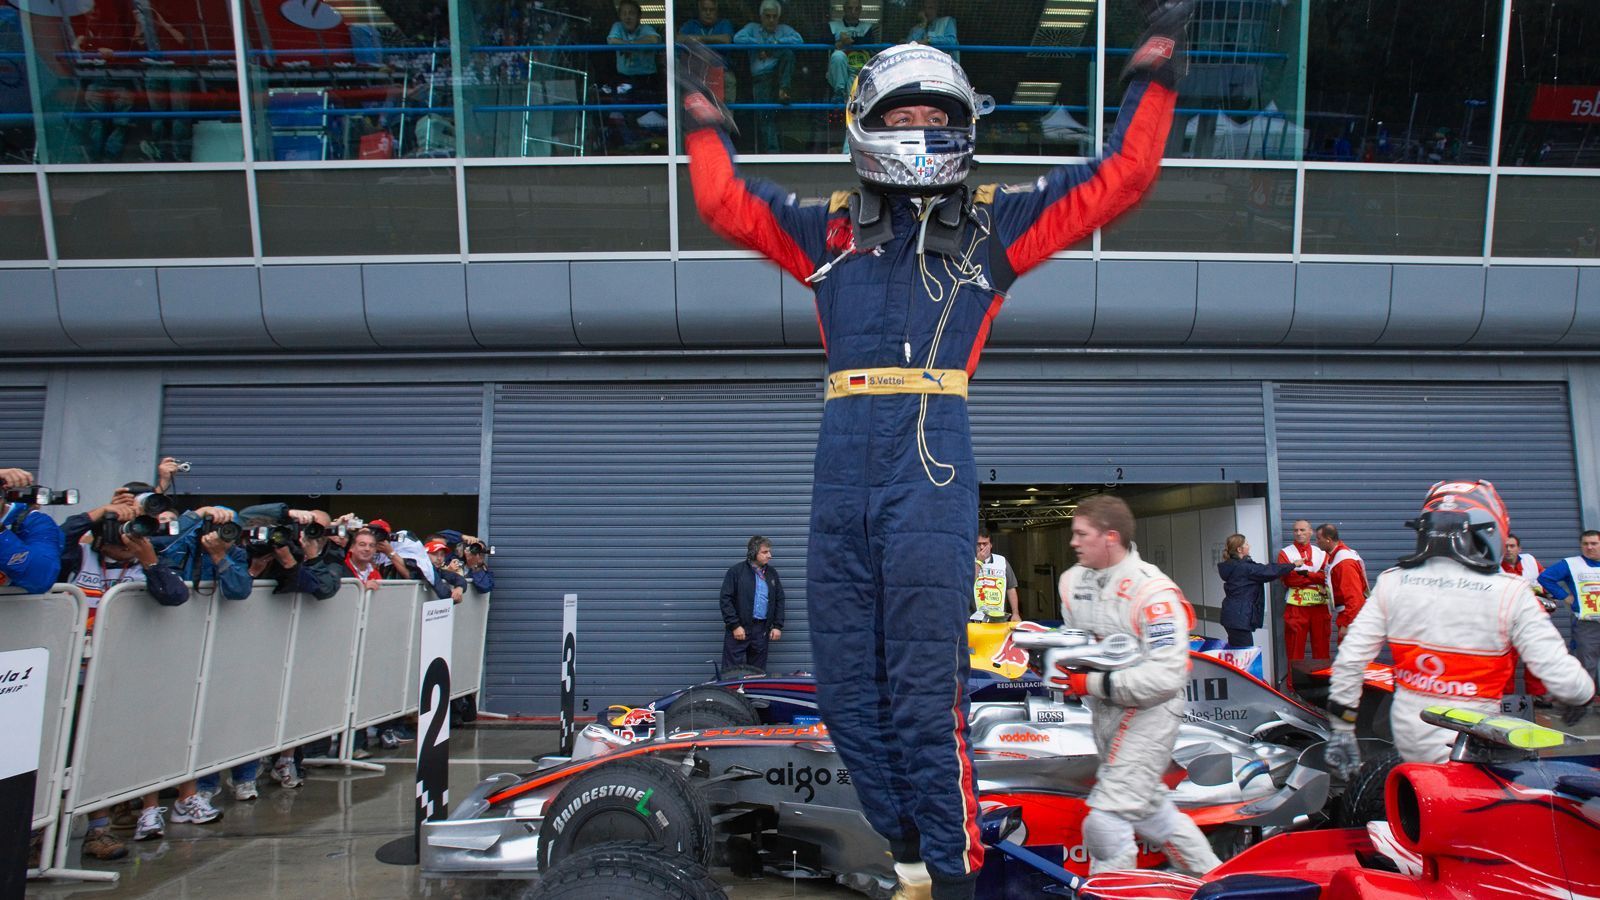 
                <strong>Der erste Sieg</strong><br>
                Sebastian Vettel ist damals noch zarte 21 Jahre jung und fährt für Toro Rosso. Am 14. September wird er mit seinem Sieg in Monza zum jüngsten Grand-Prix-Gewinner in der Formel-1-Geschichte.
              